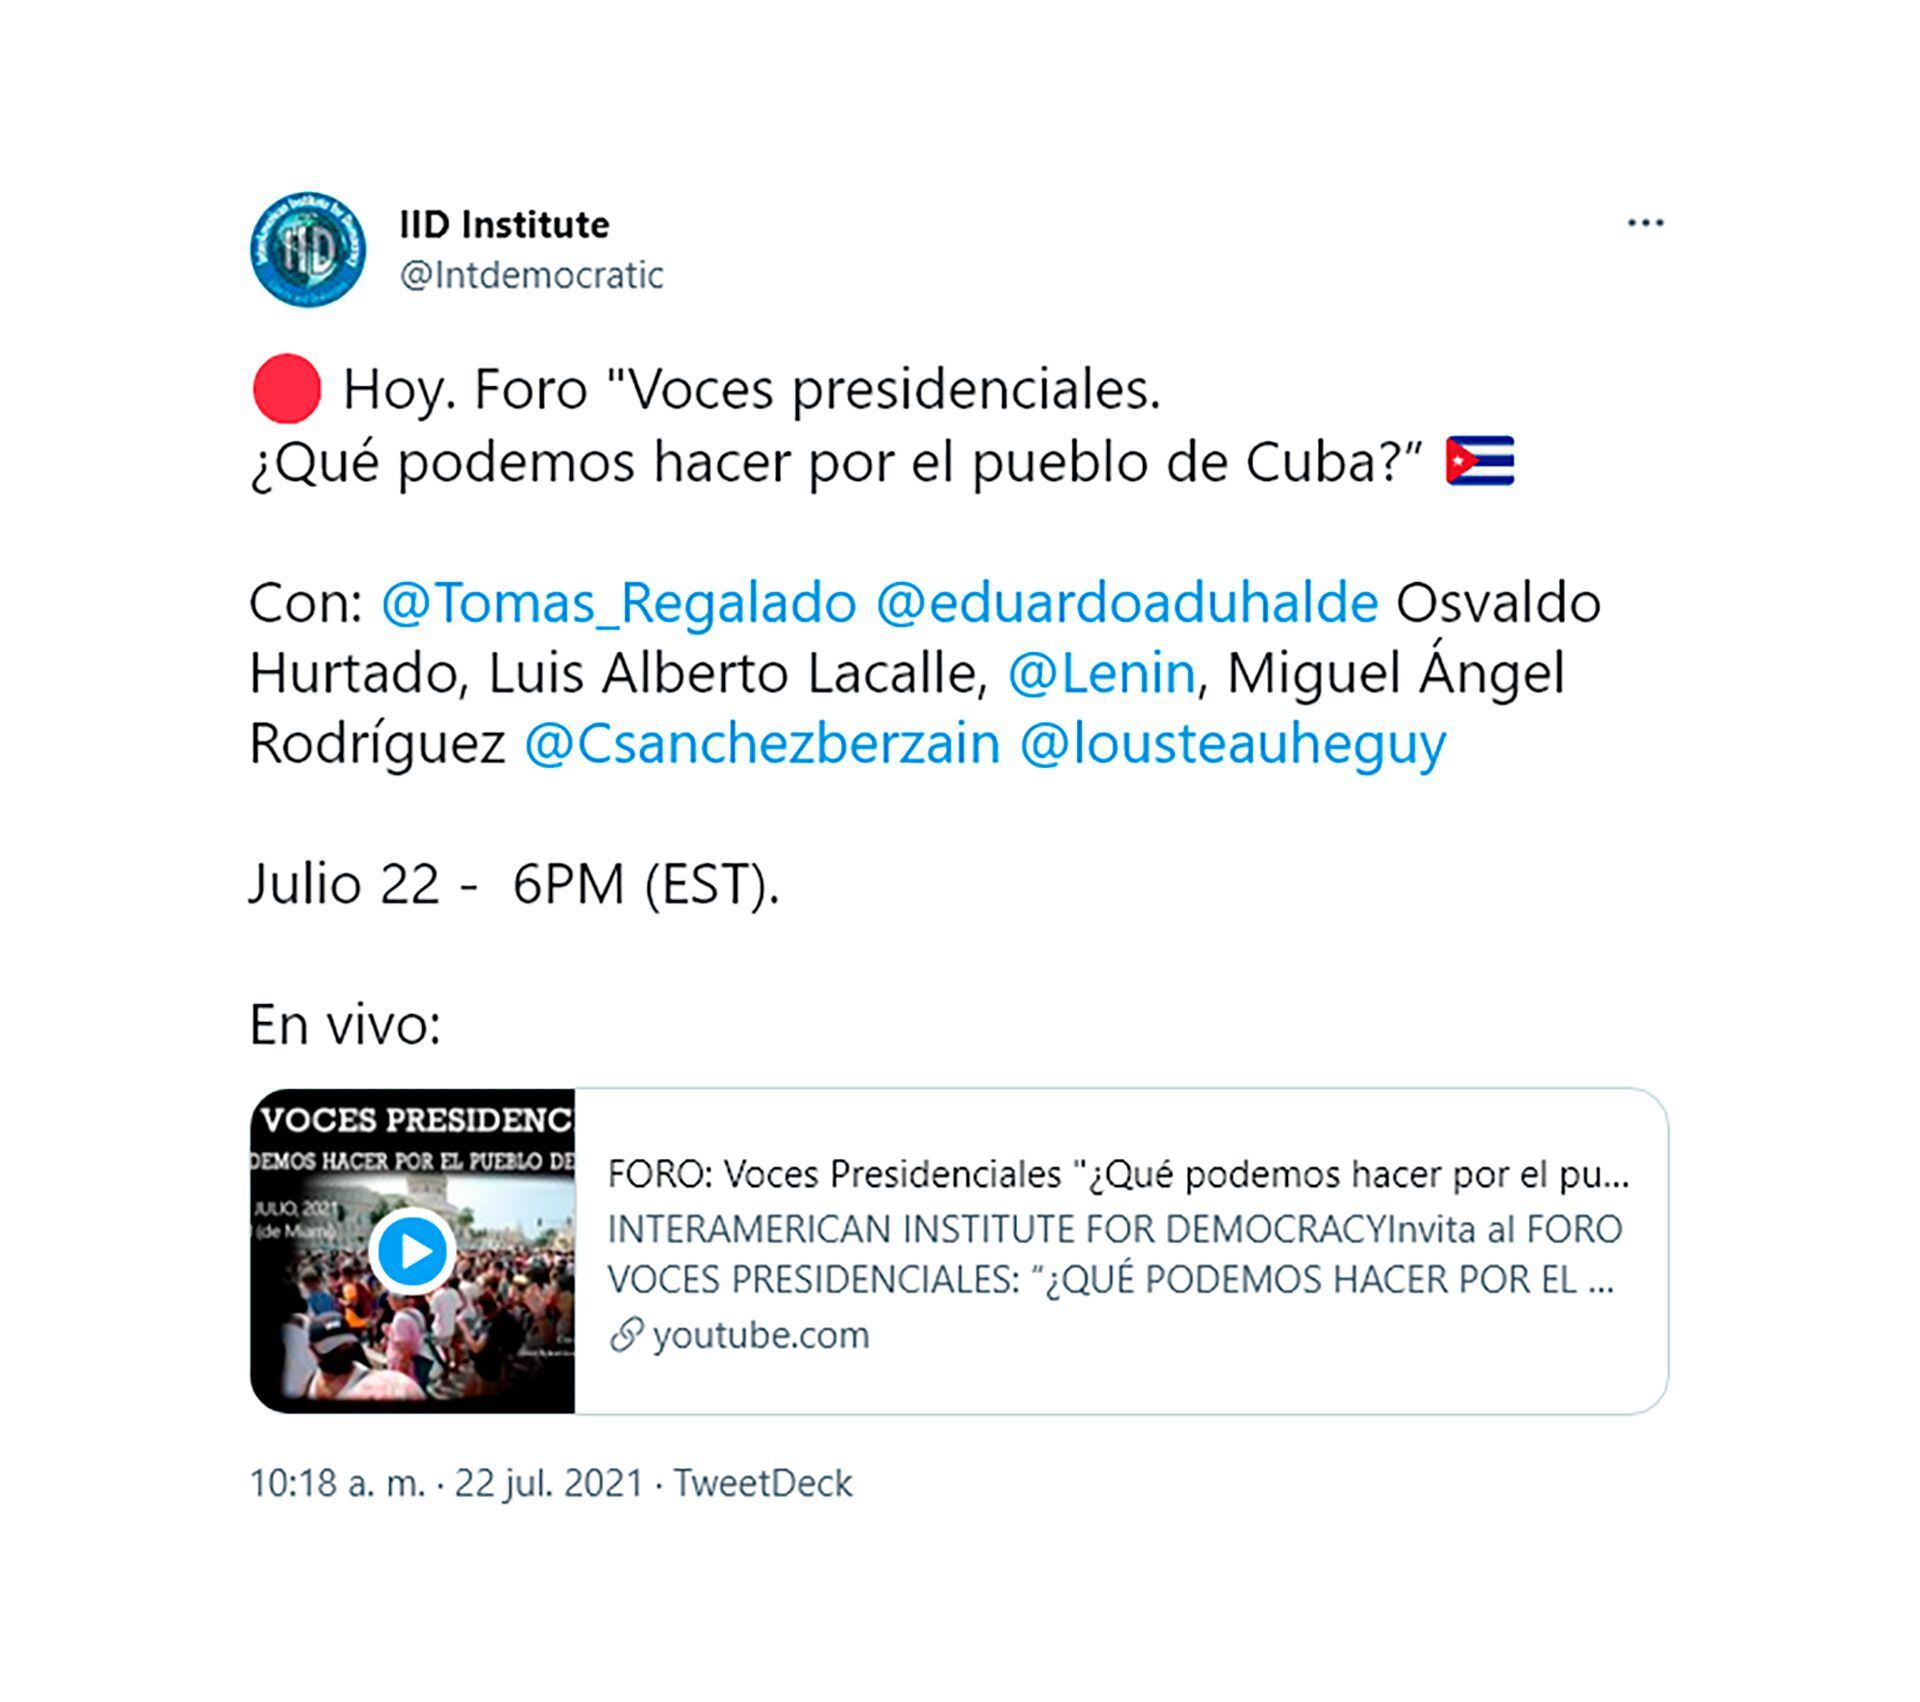 Foro organizado por el Interamerican Institute for Democracy tuit